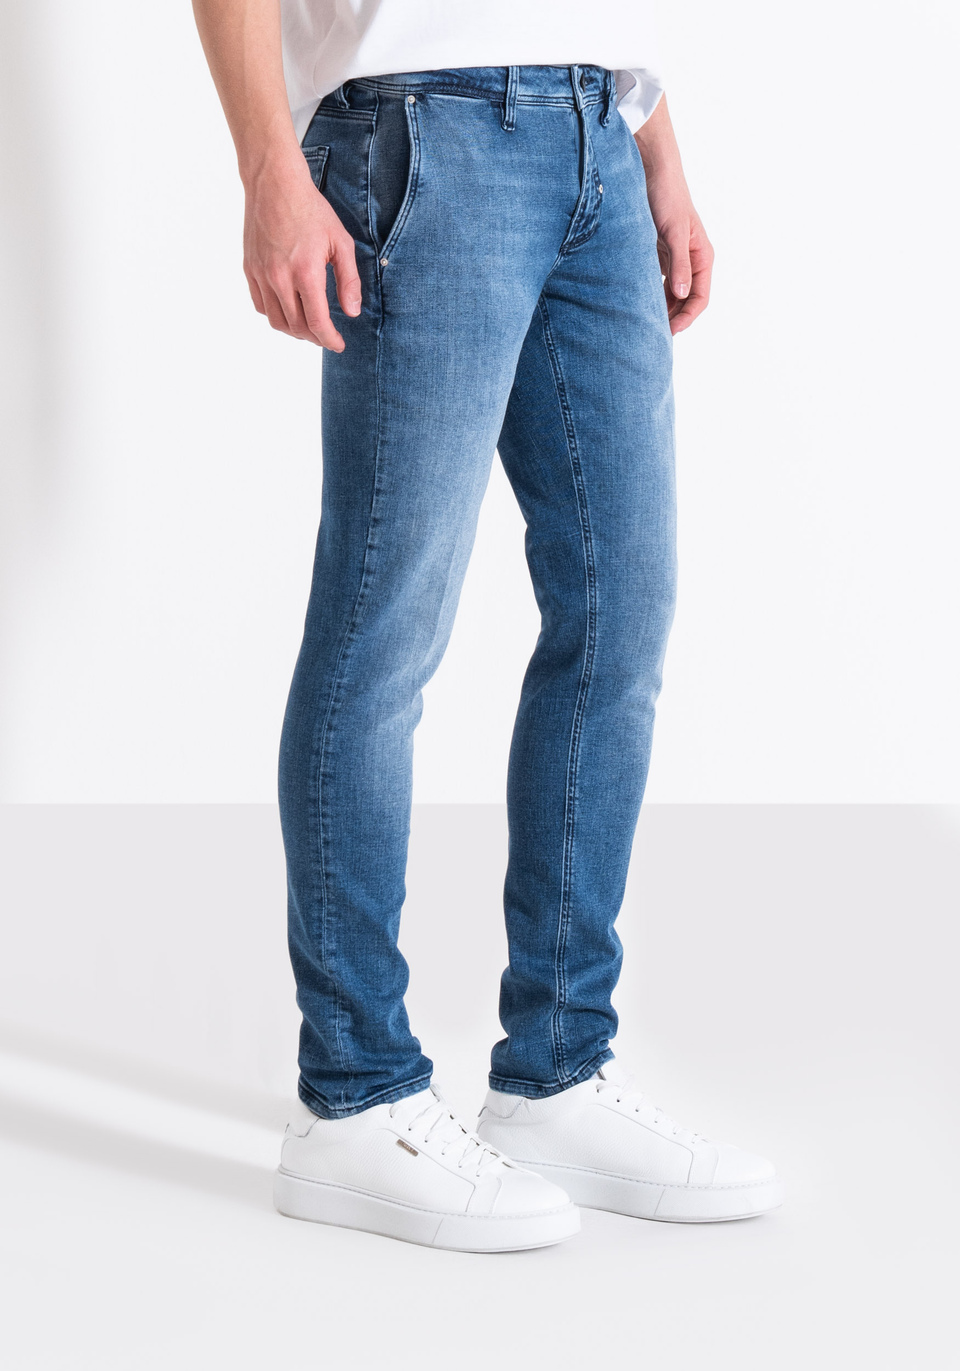 Discover 165+ antony morato jeans best